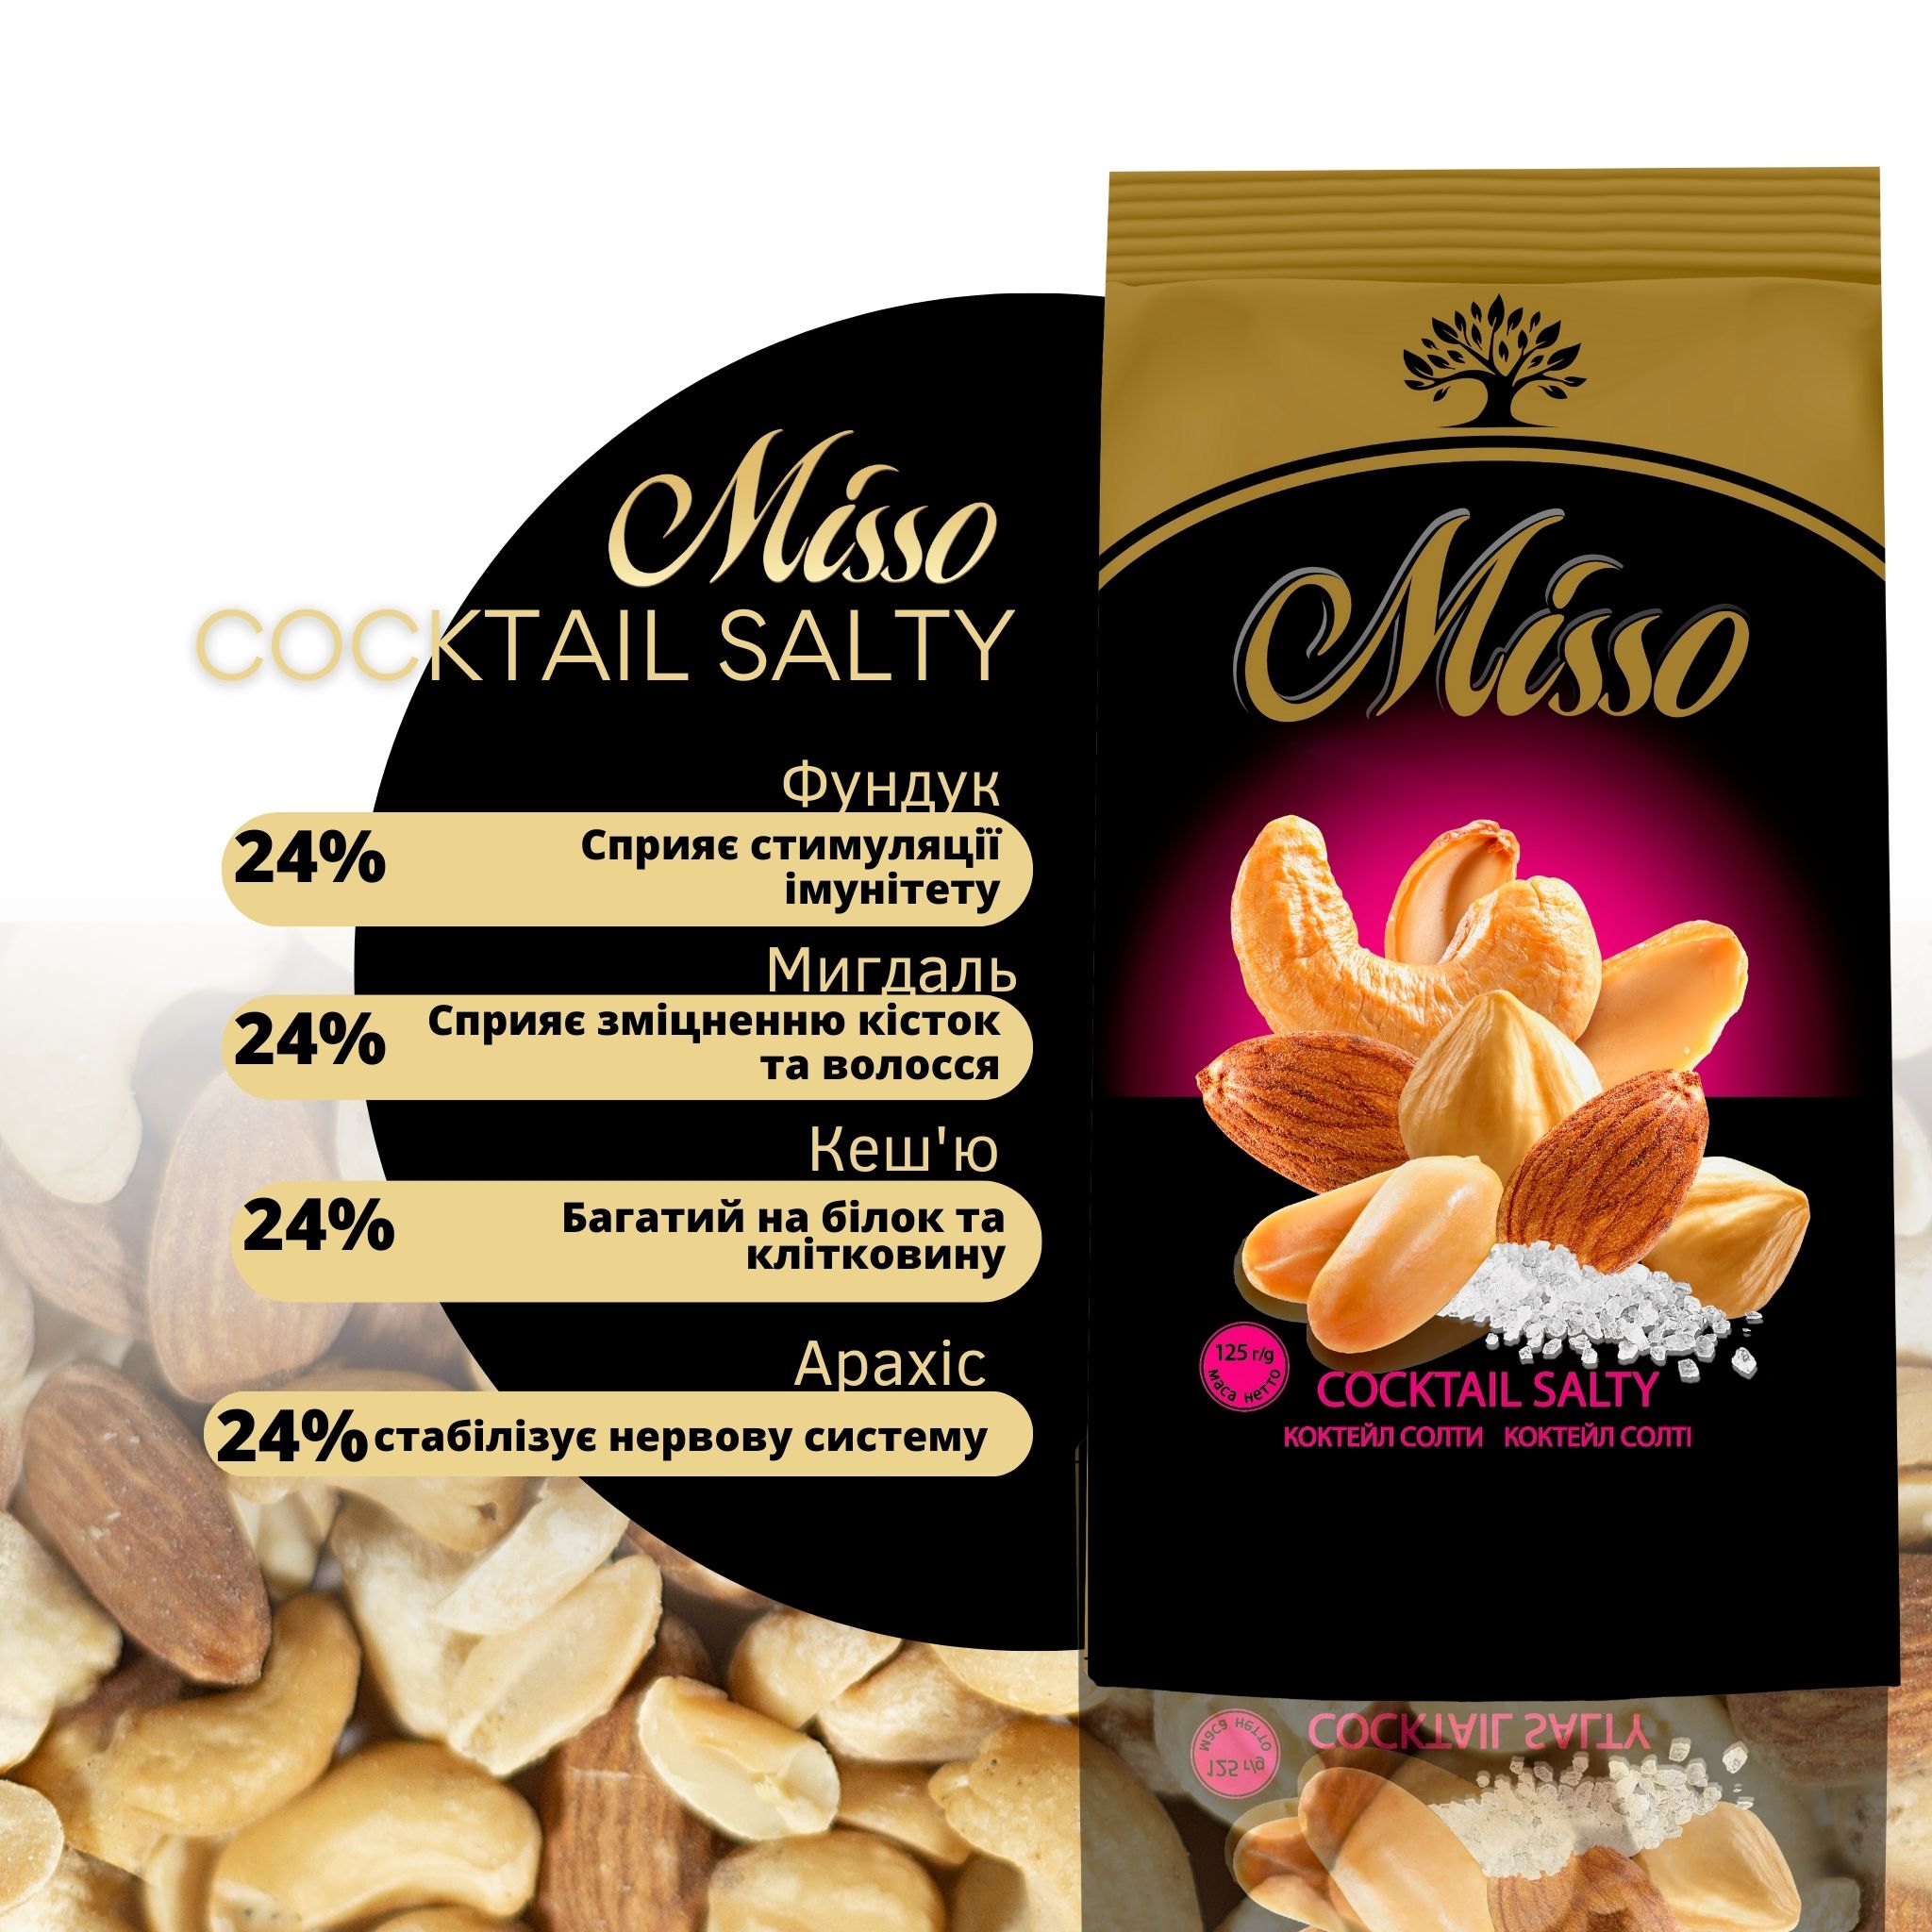 Асорті горіхів Misso Coctail Salty 125 г - фото 3